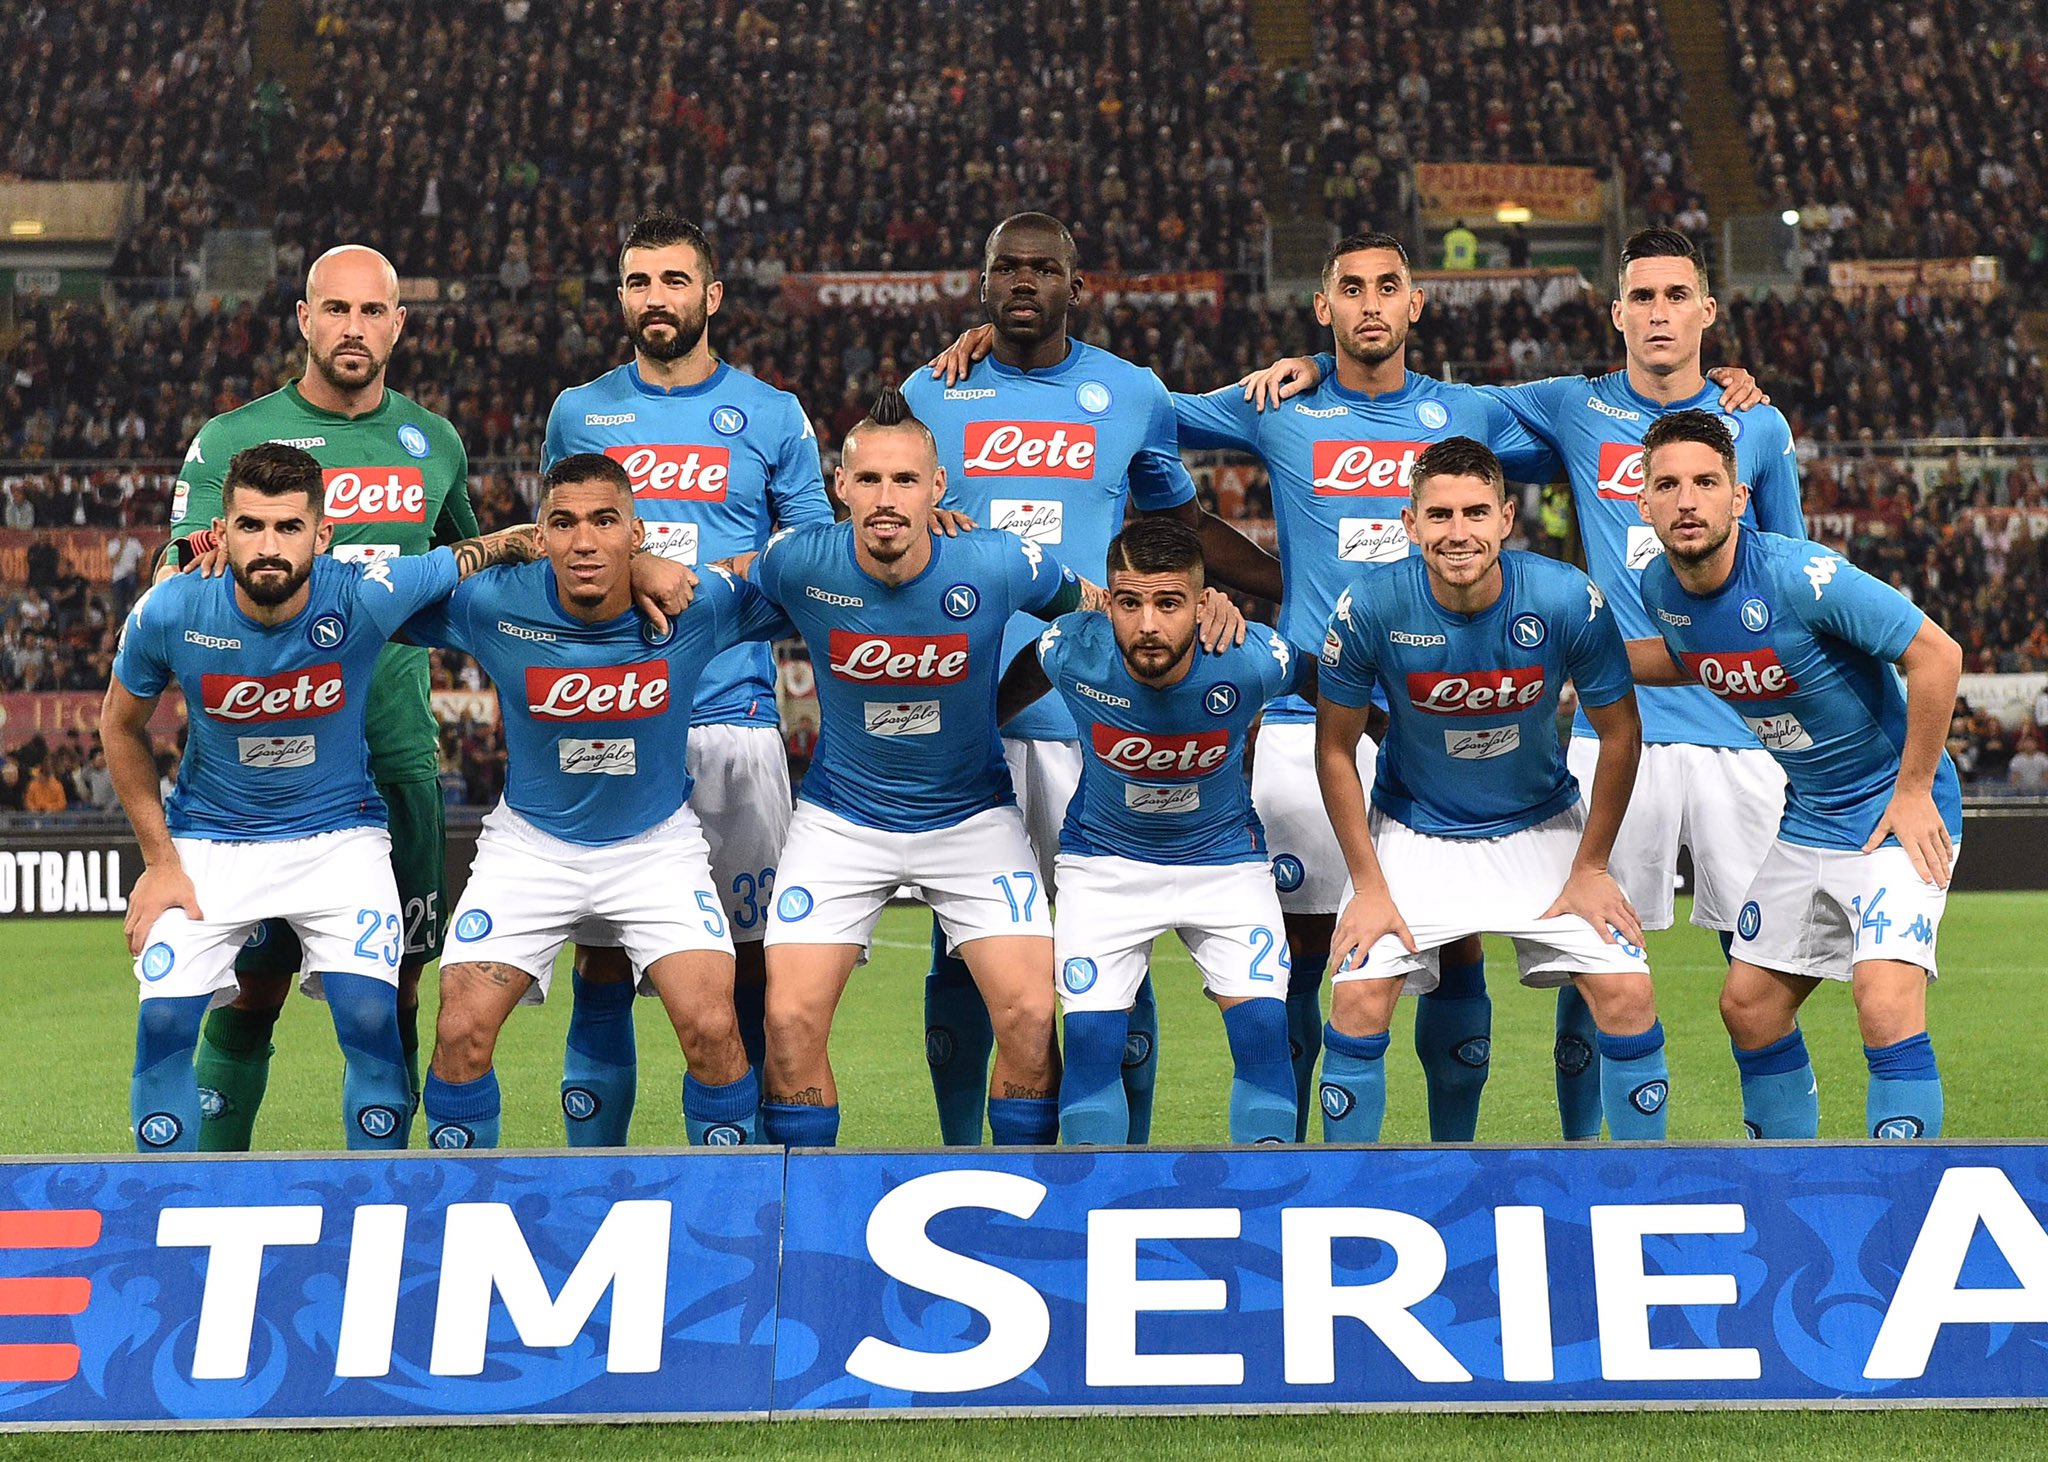 Il Napoli è l’unica squadra a punteggio pieno dei migliori campionati europei